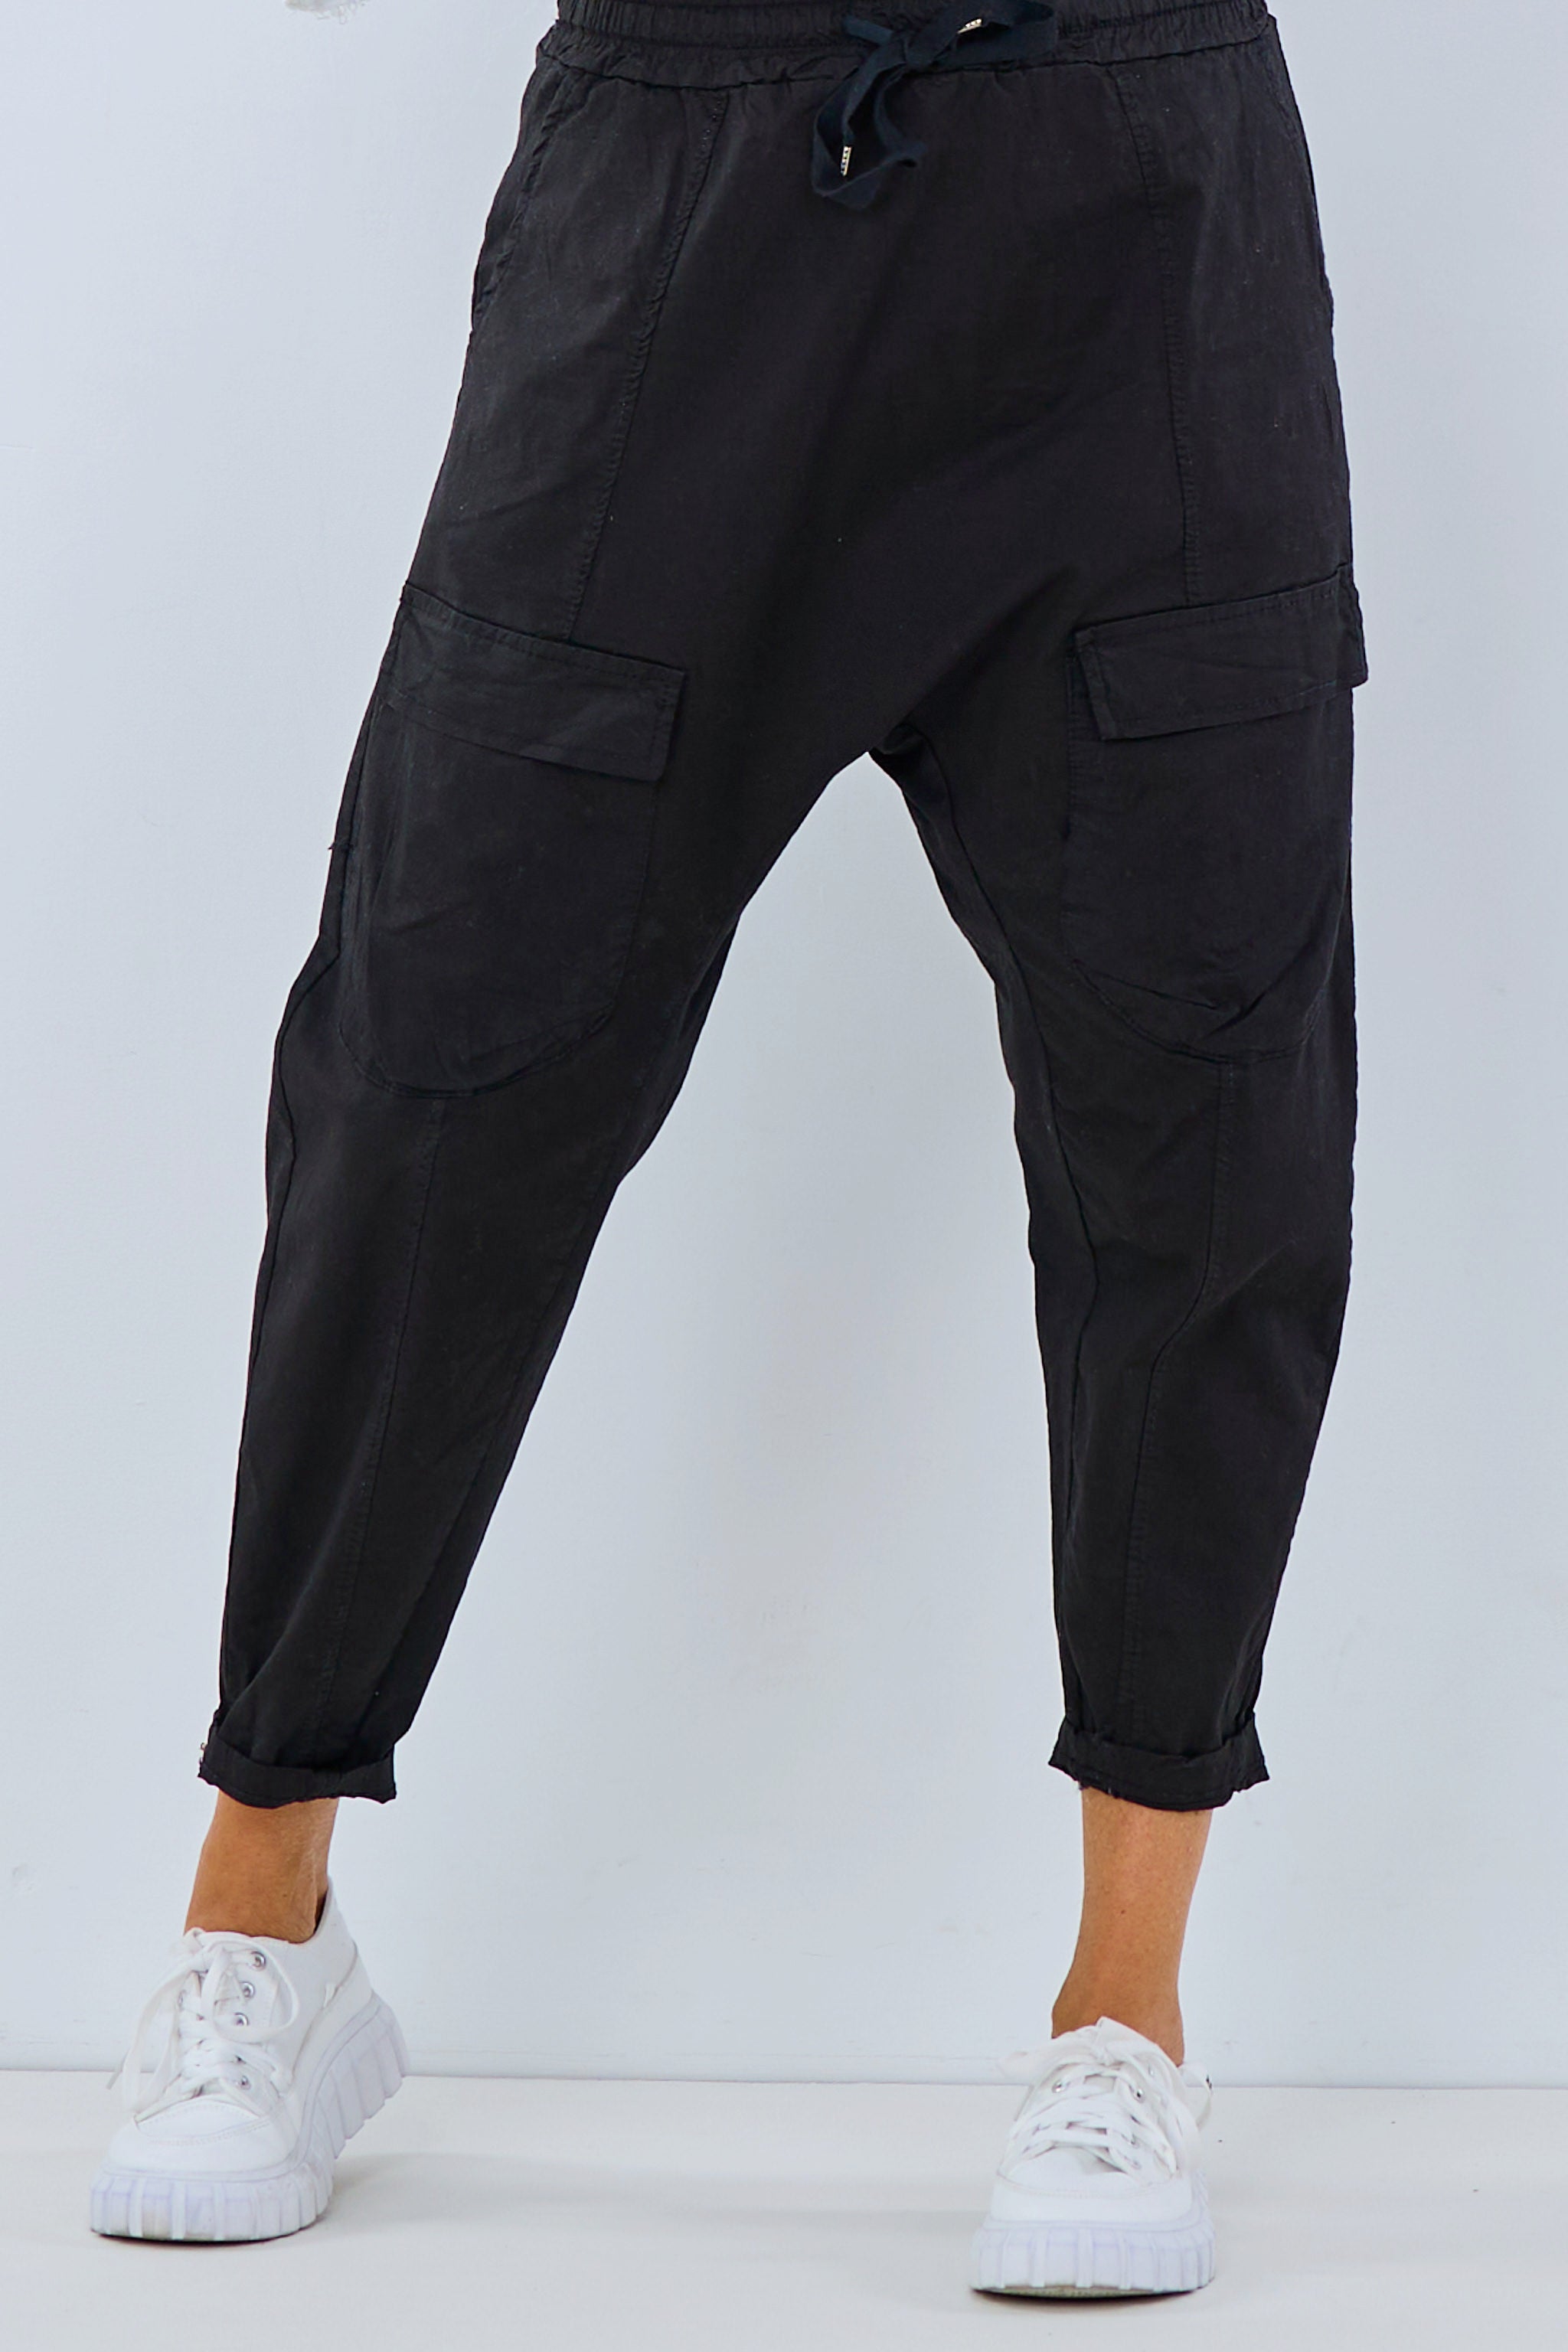 Baggy Hose mit aufgesetzten Taschen, schwarz von Trends & Lifestyle